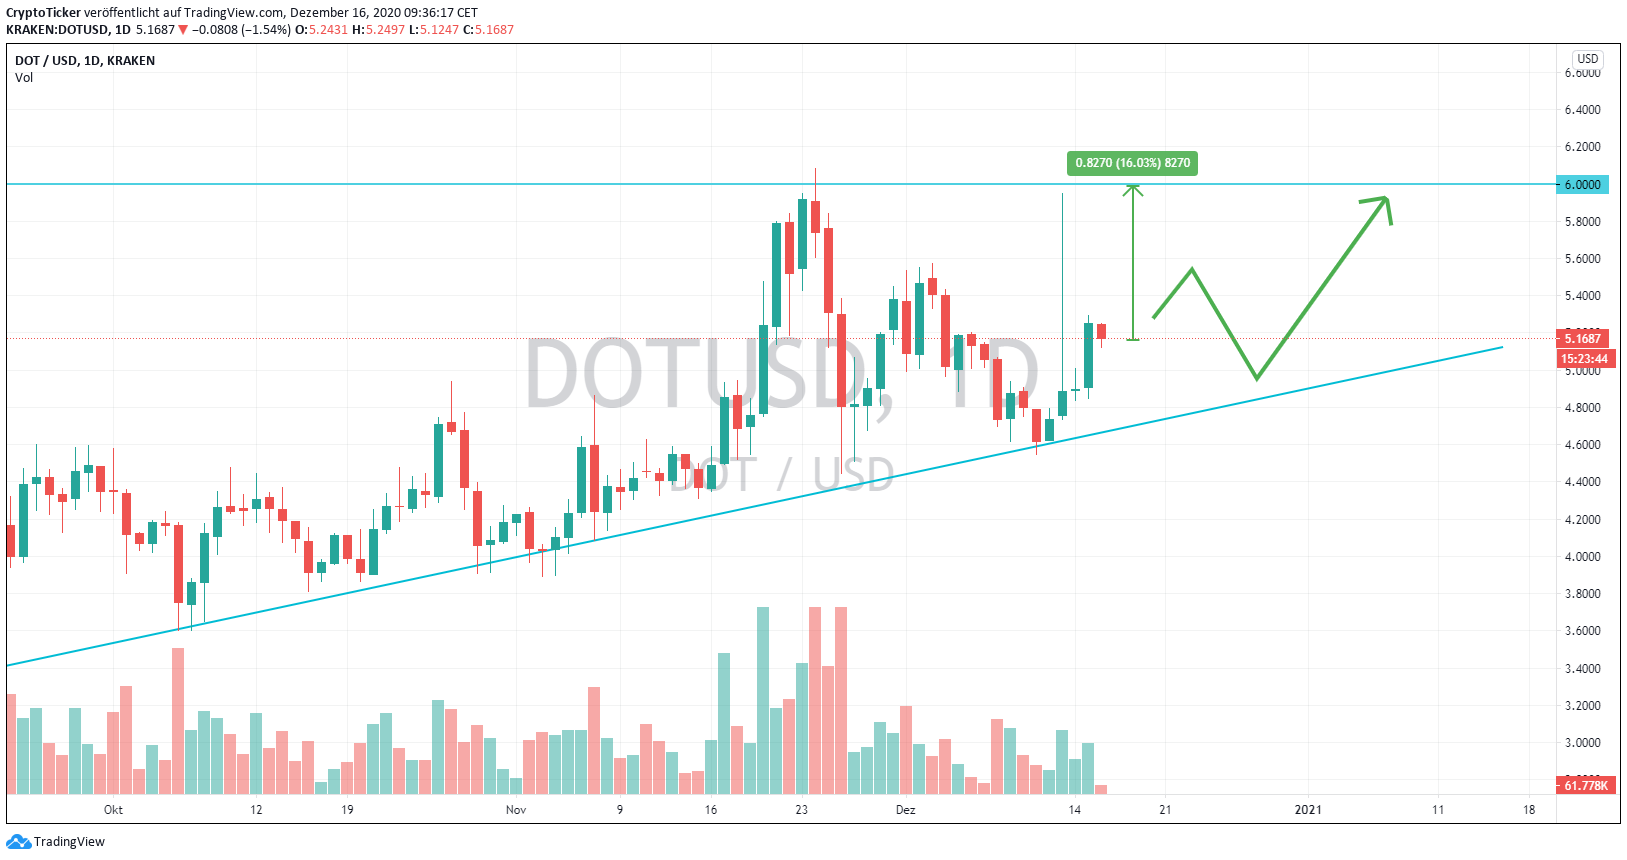 DOT/USD 1 Day chart trade setup